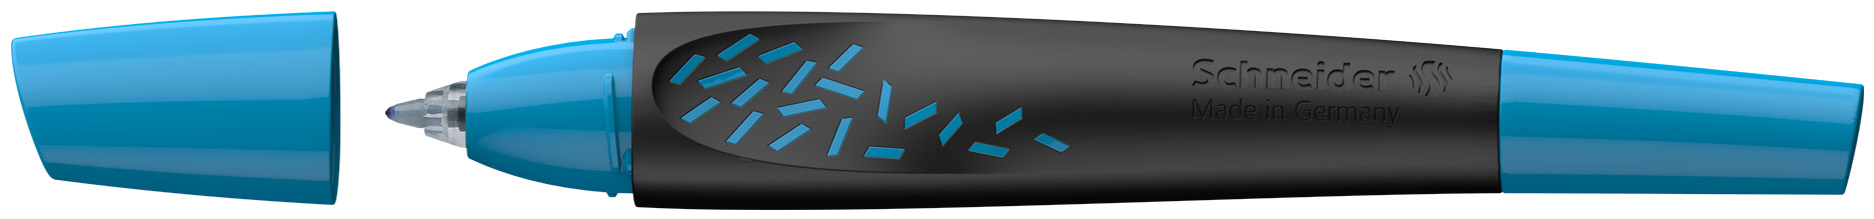 SCHNEIDER Rollerball Pen Breeze 0.5mm 188803 noir/bleu noir/bleu